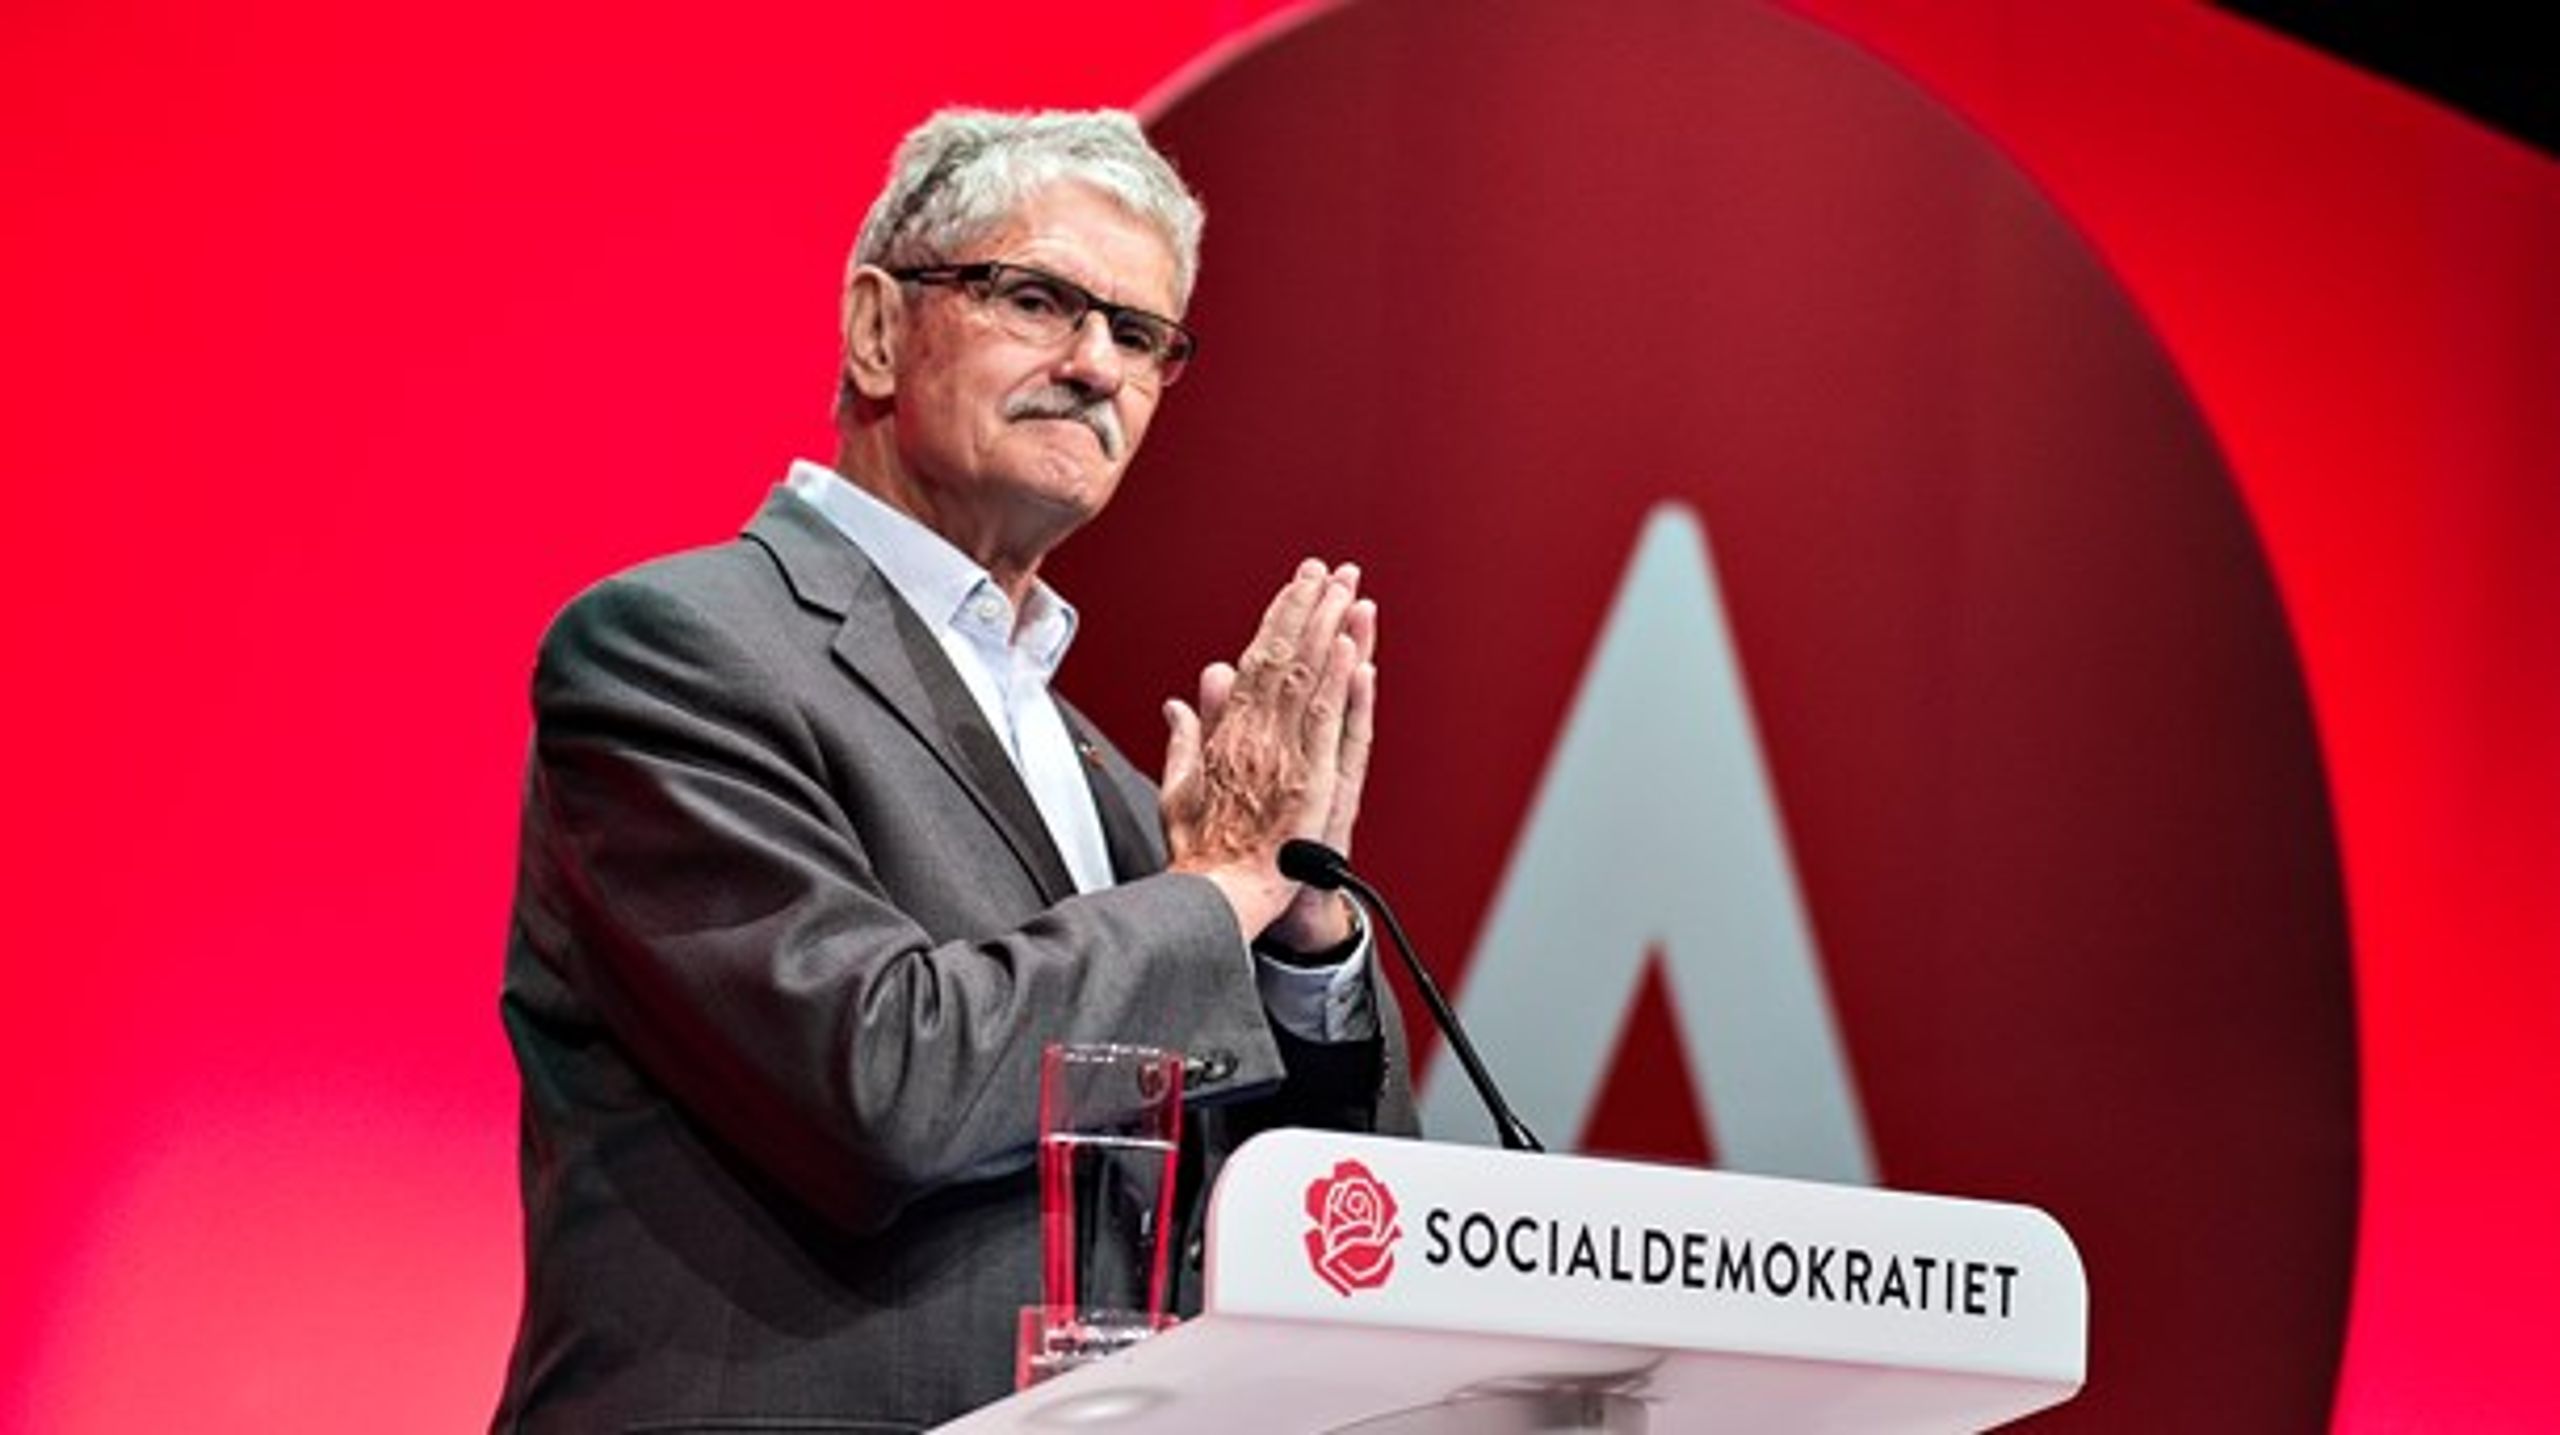 Forhenværende partiformand og mangeårig minister Mogens Lykketoft trækker sig fra dansk politik ved næste valg, fortalte han søndag de delegerede ved Socialdemokratiets kongres i Aalborg.